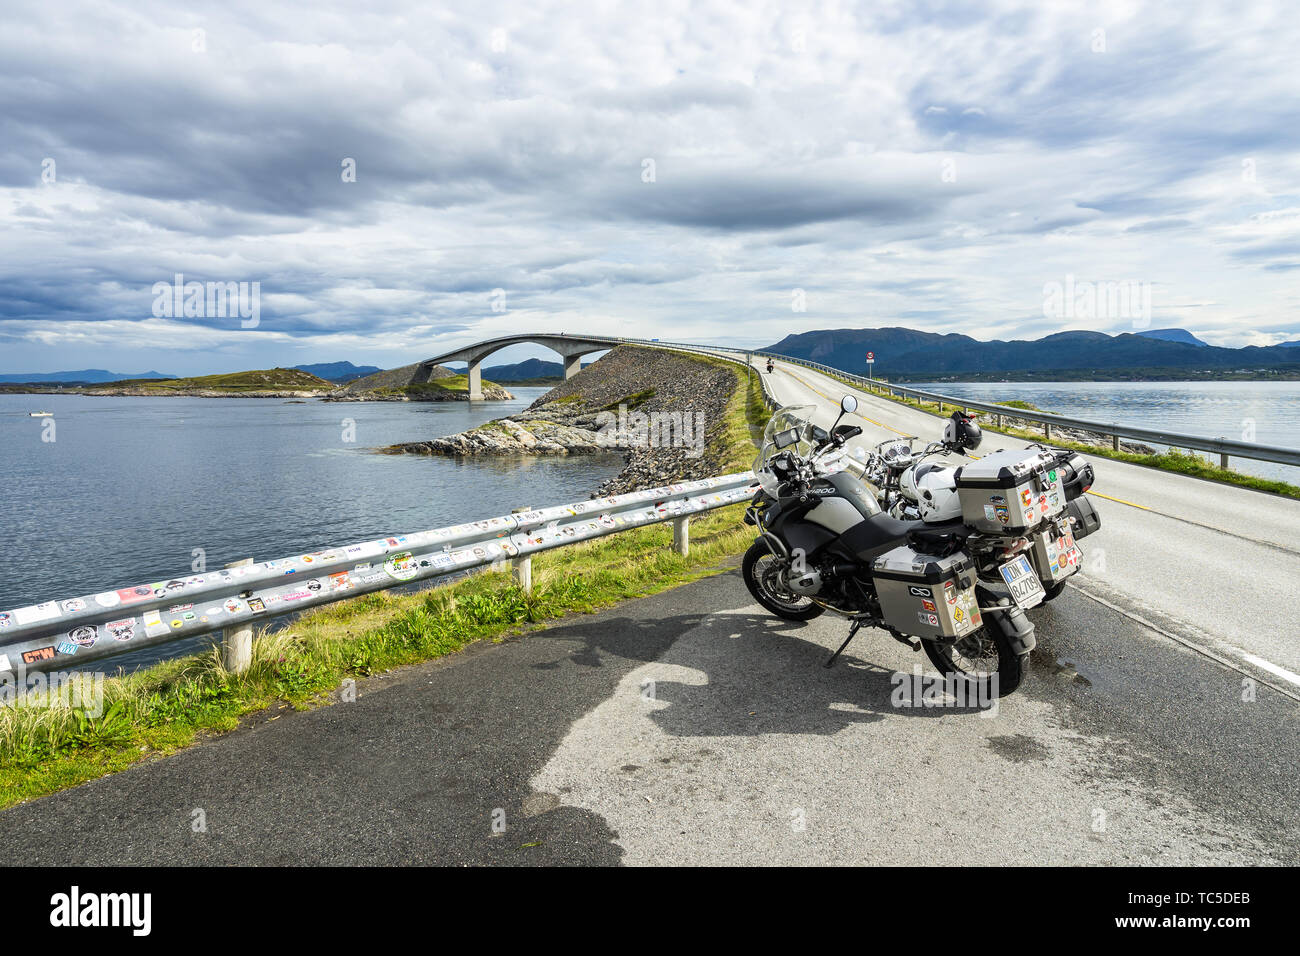 La célèbre route de l'Atlantique (Atlanterhavsveien) est l'un des préféré des routes dans le monde entier pour les motocyclistes, la Norvège Banque D'Images